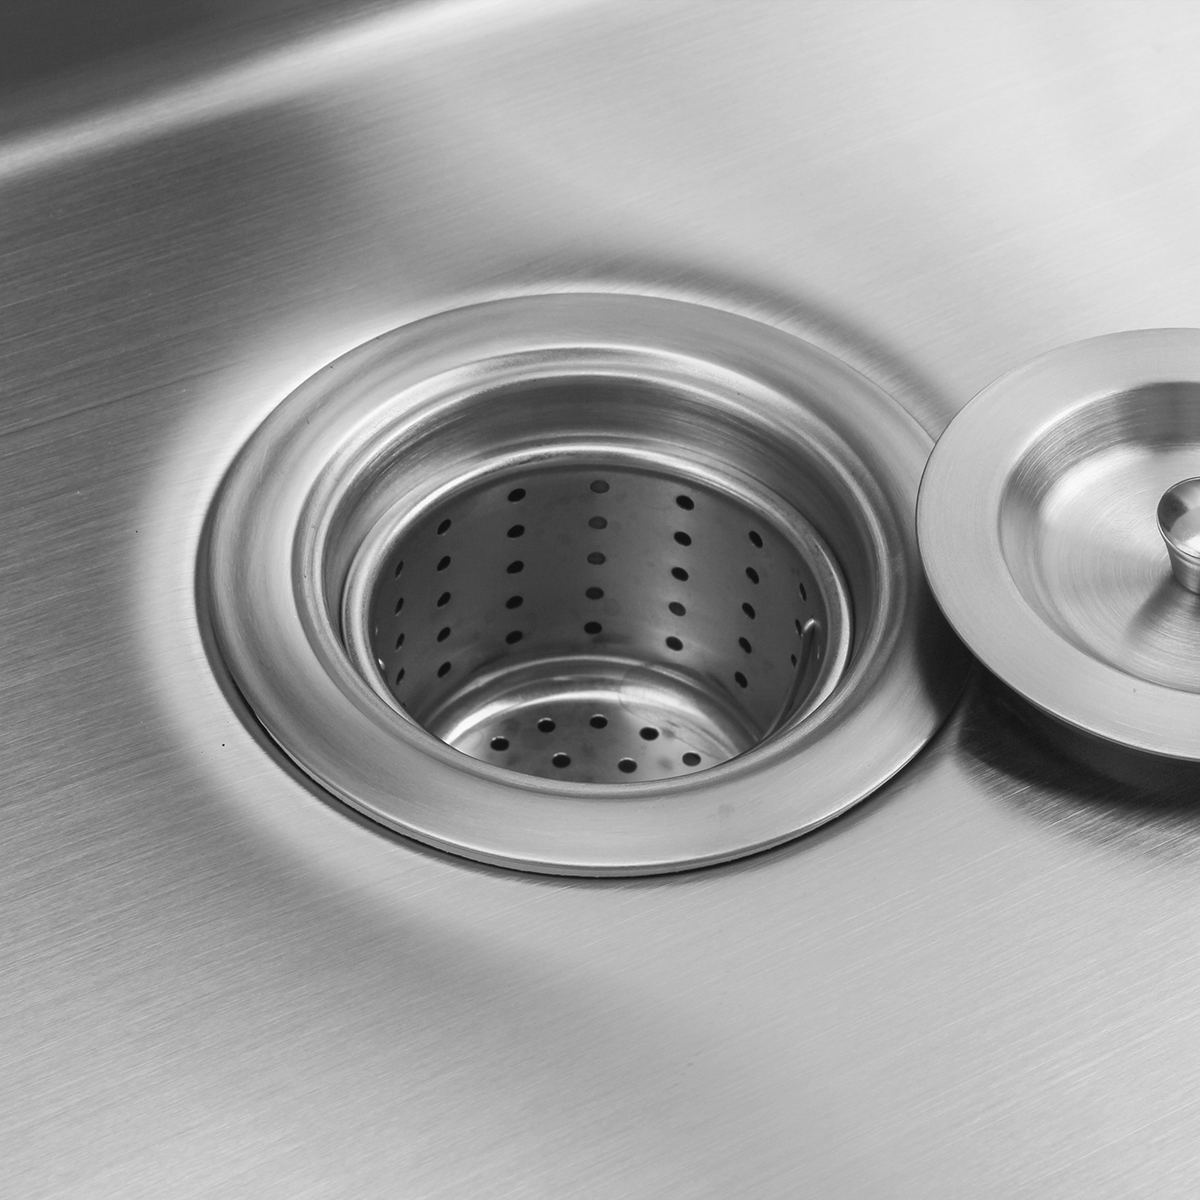 18 Gauge 304 Stainless Steel Handmade Undermount PVD Nano Kitchen Sink with Bottom Grid